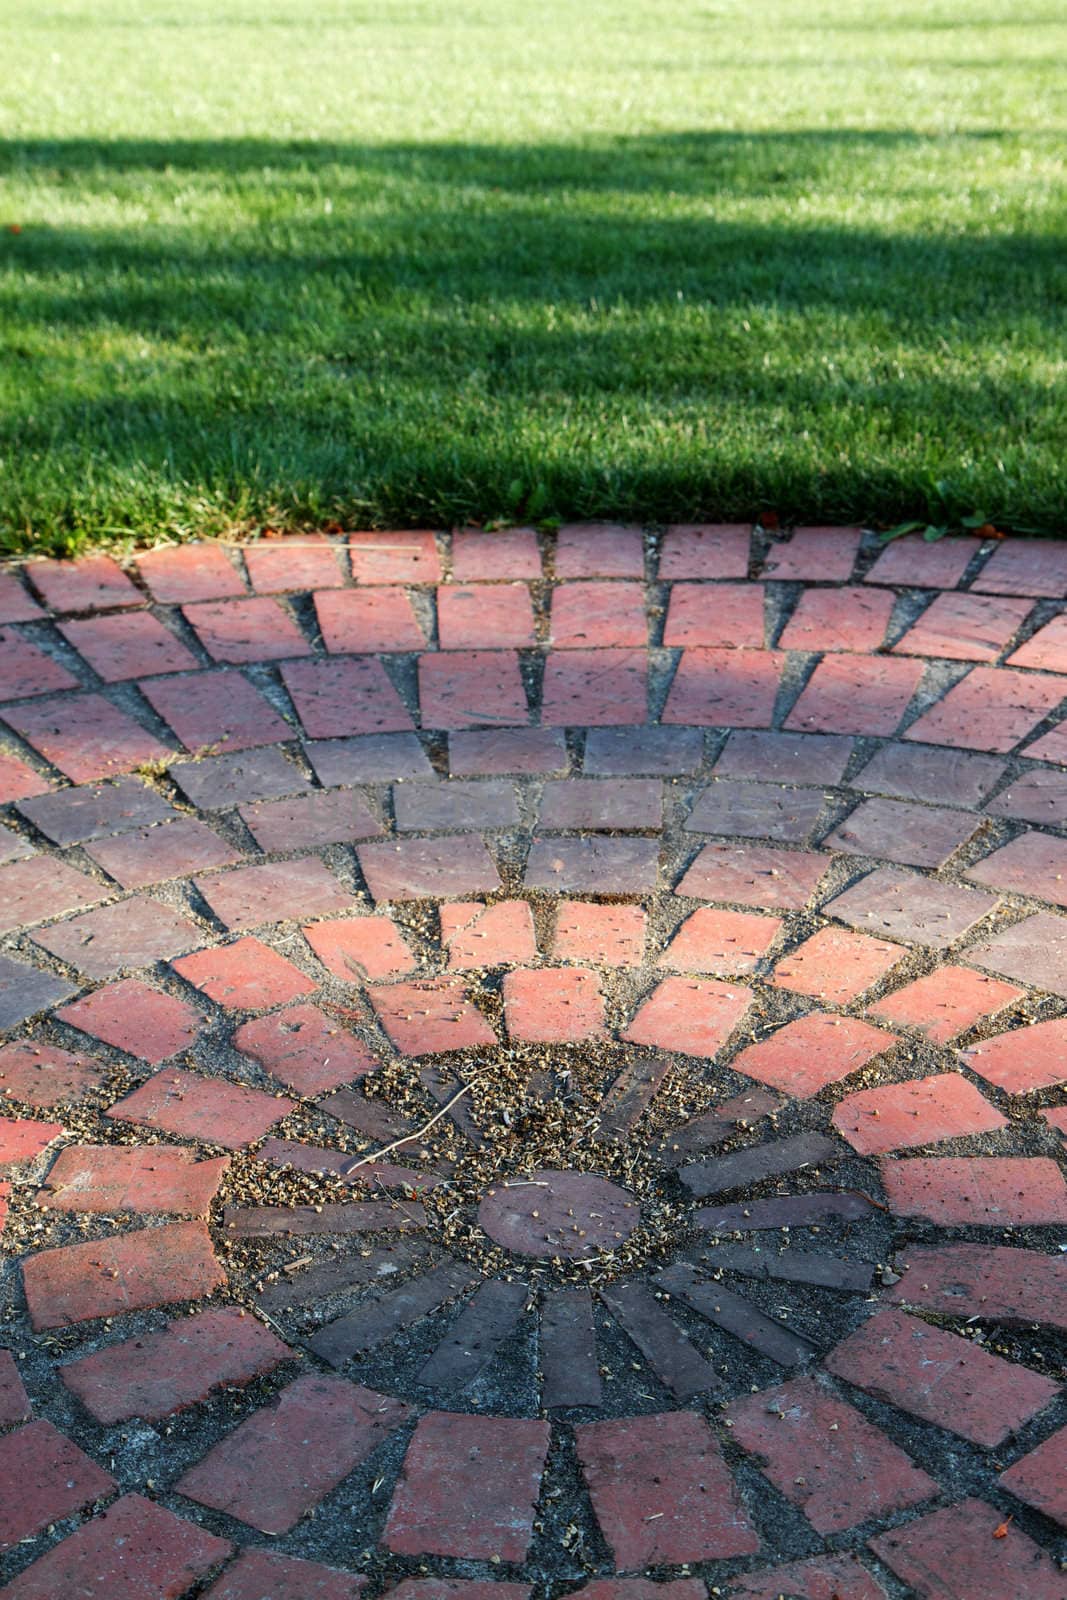 Brick circle and grass by bobkeenan